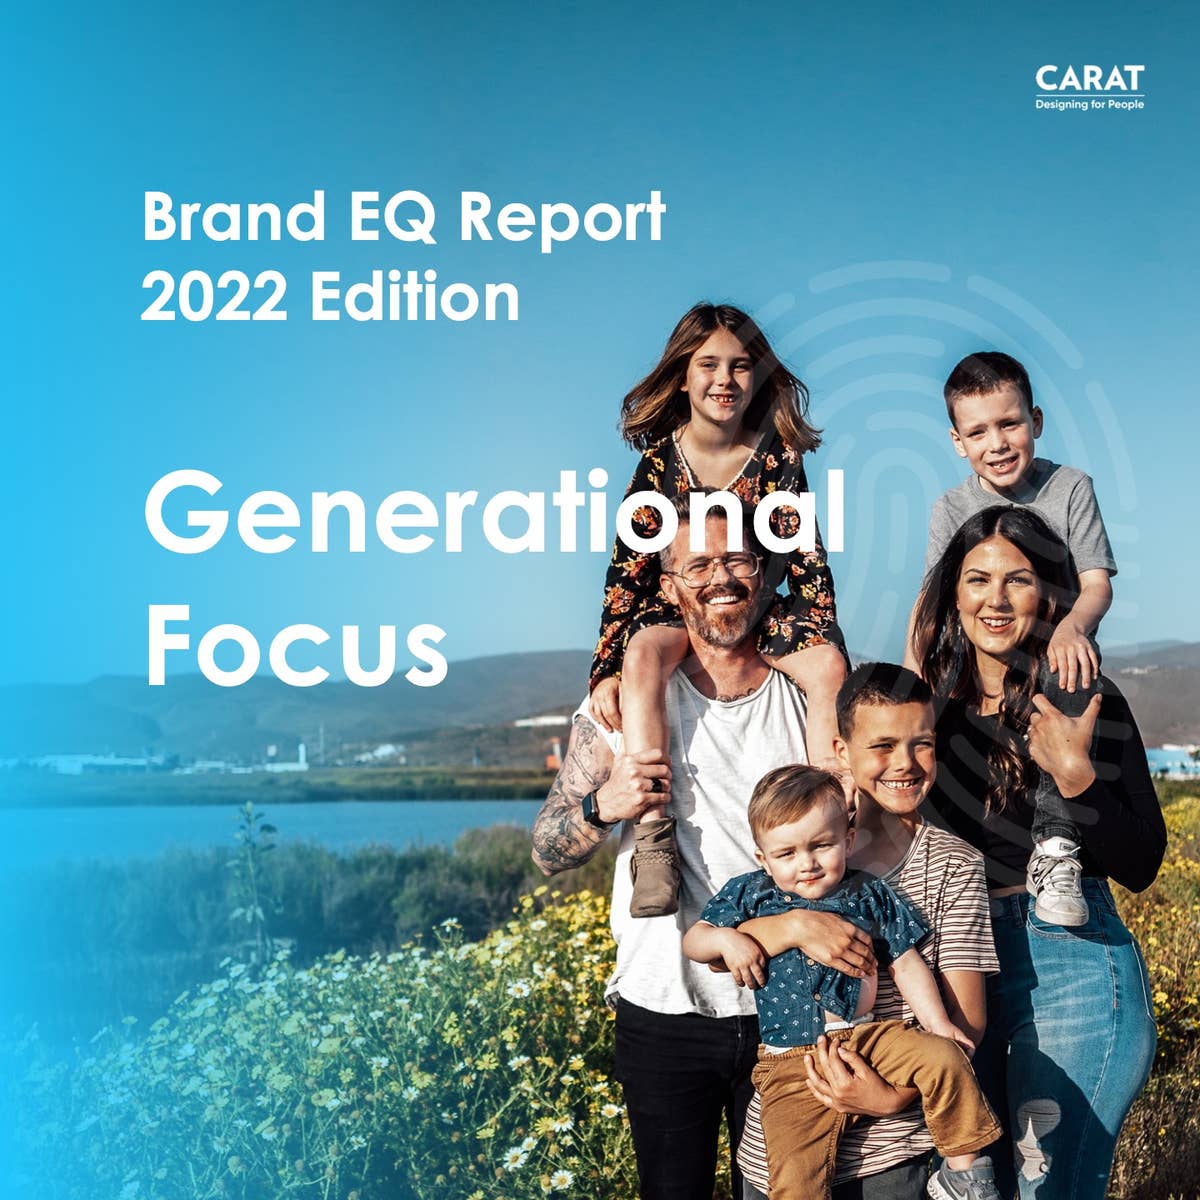 Brand EQ 2022: Generational Focus